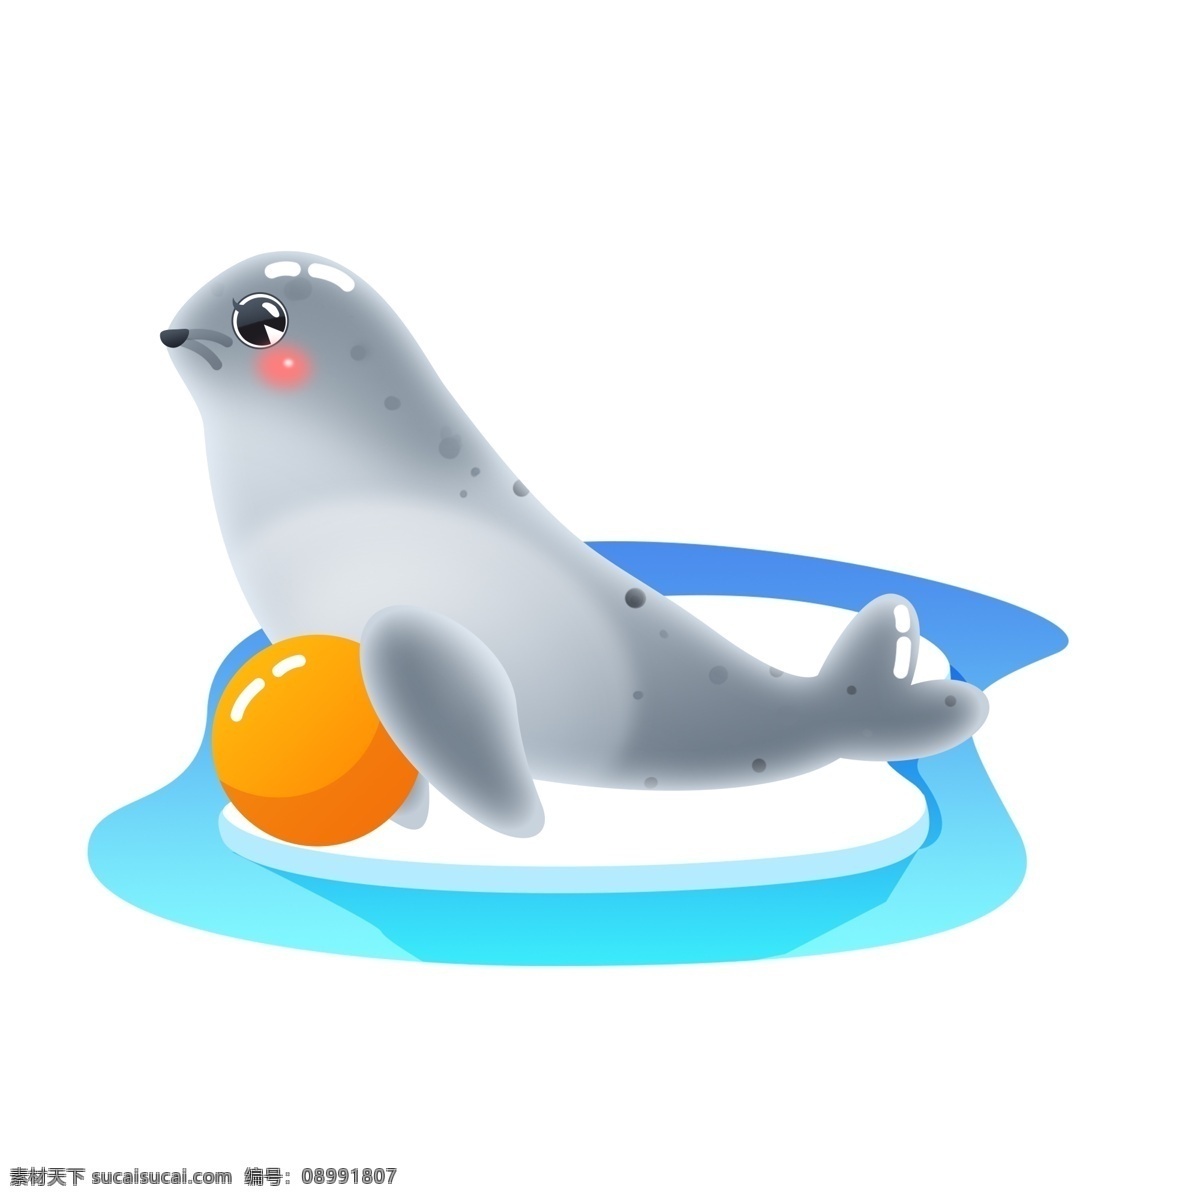 冰川 国际 海豹 节 公益 宣传 卡通 可爱 矢量 动物 皮球 南极 3月1日